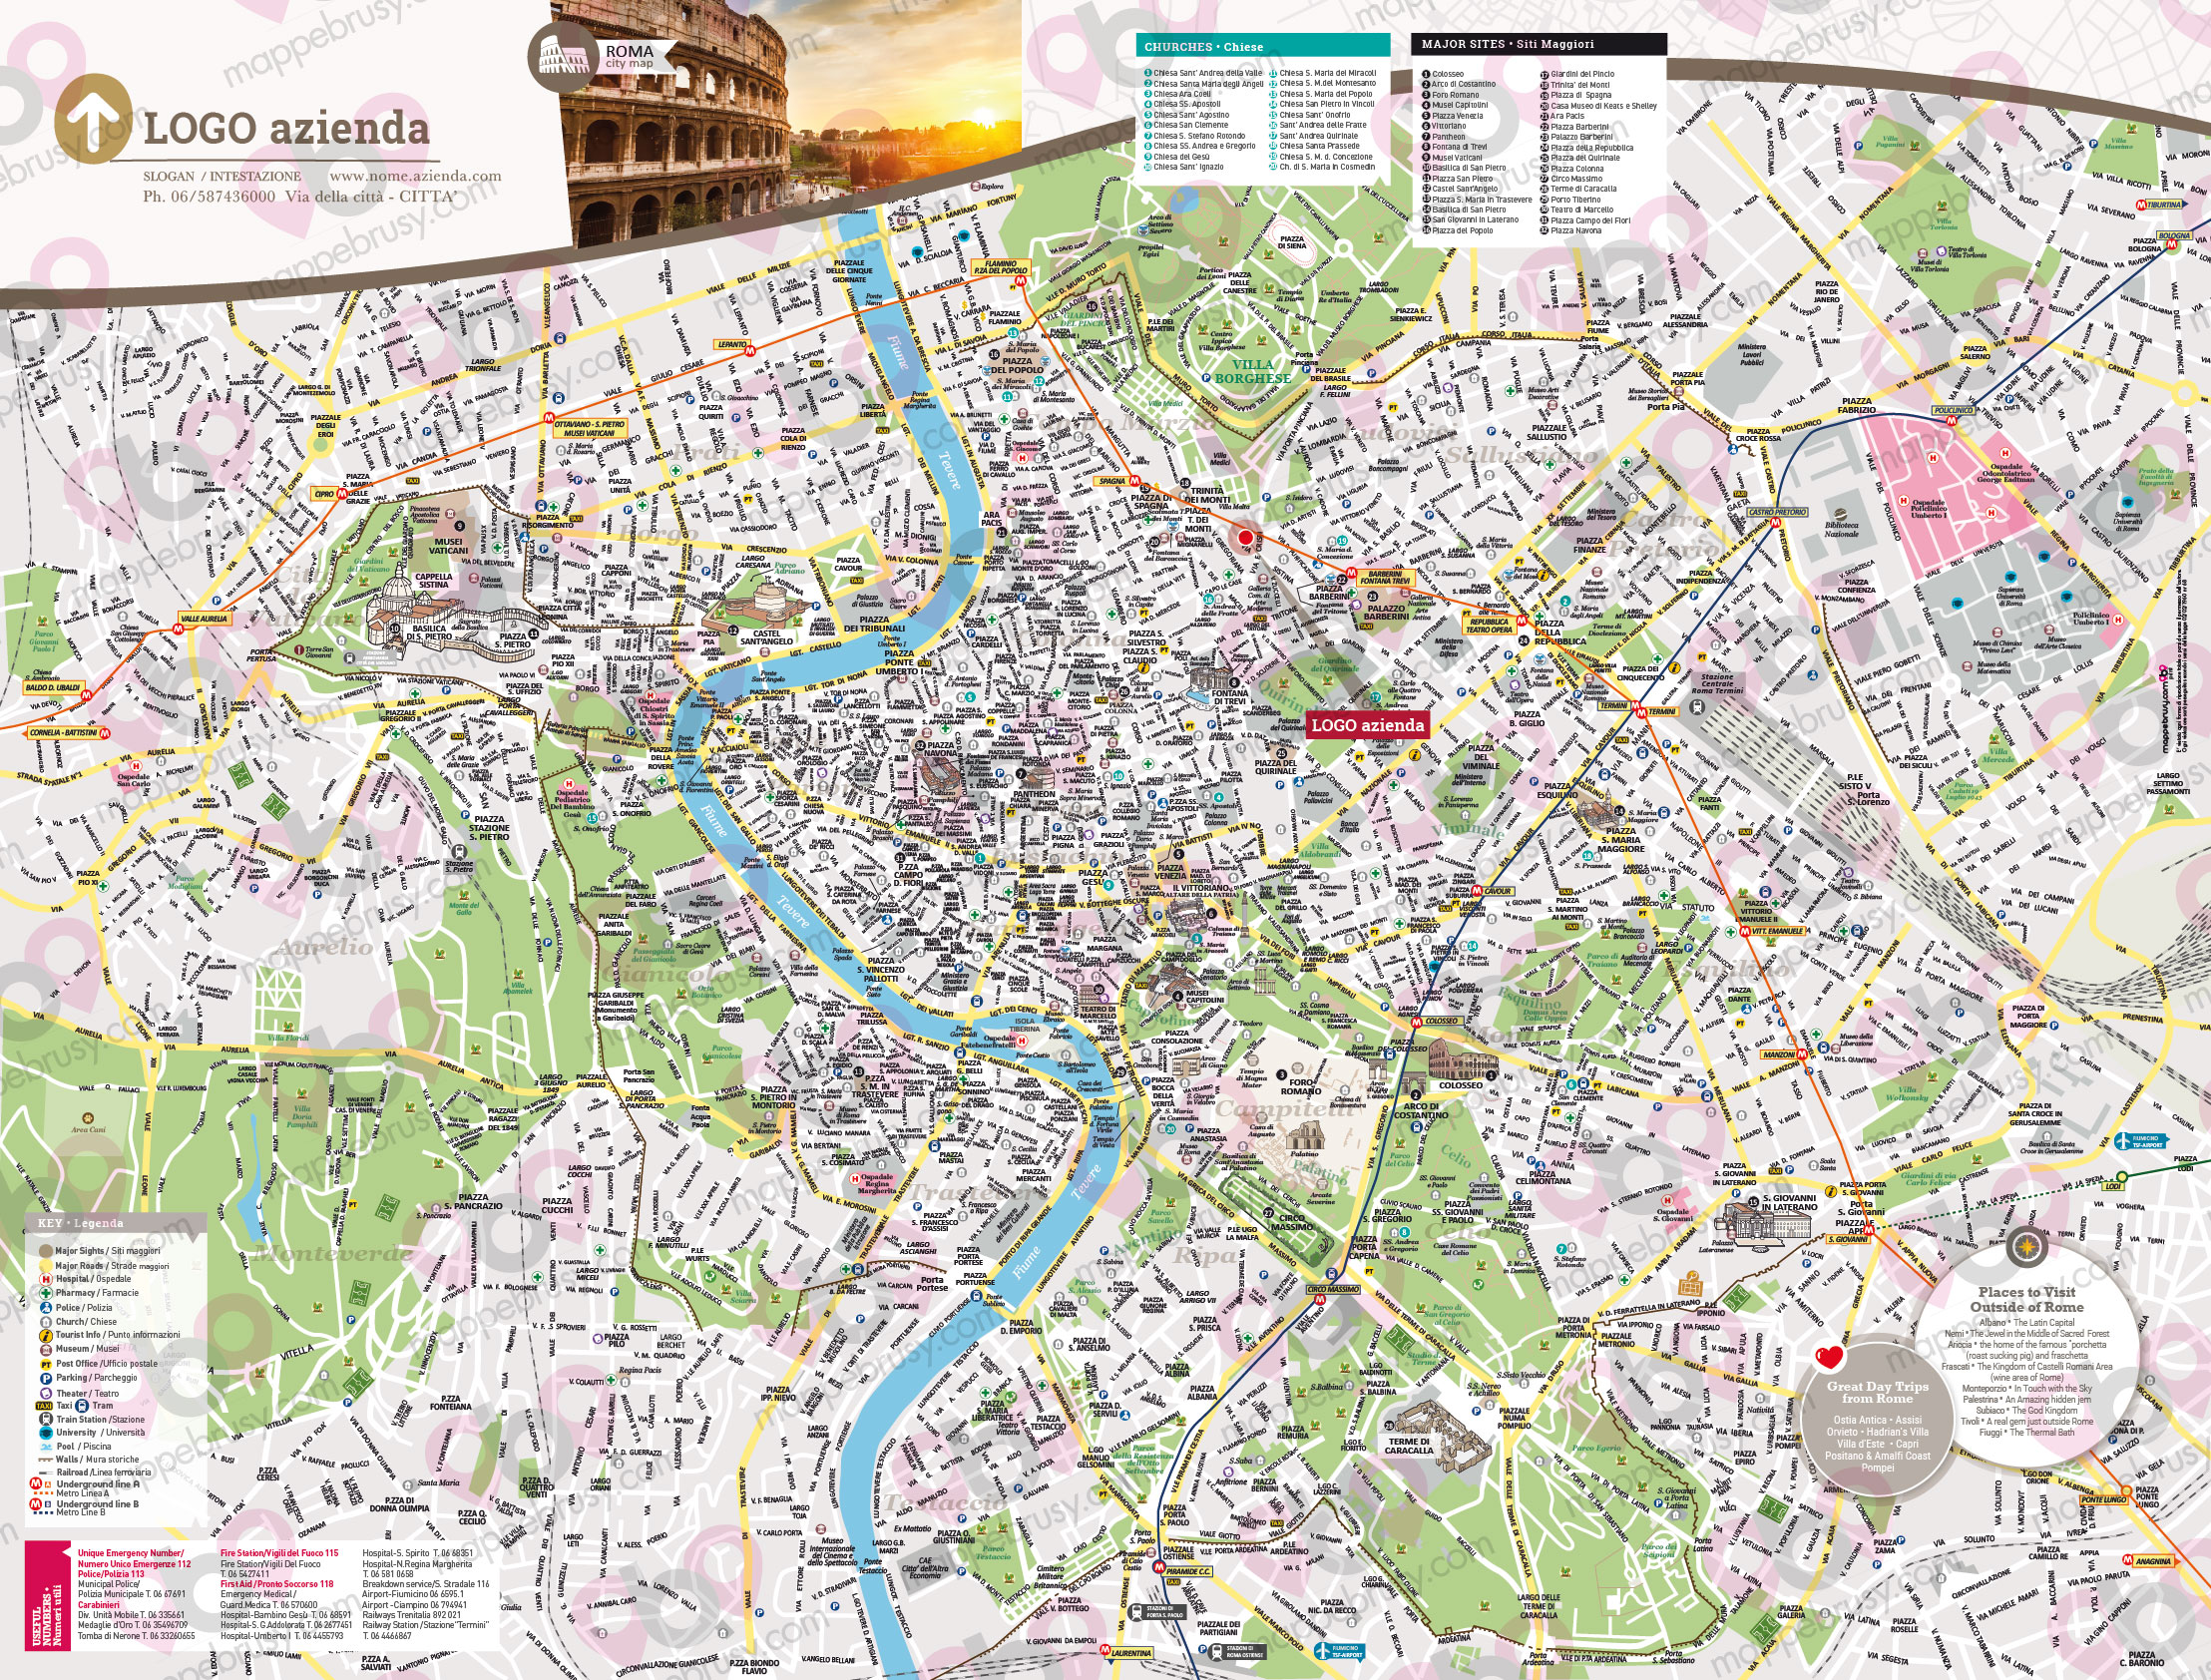 Mappa di Roma - Roma city map - mappa Roma - mappa personalizzata di Roma